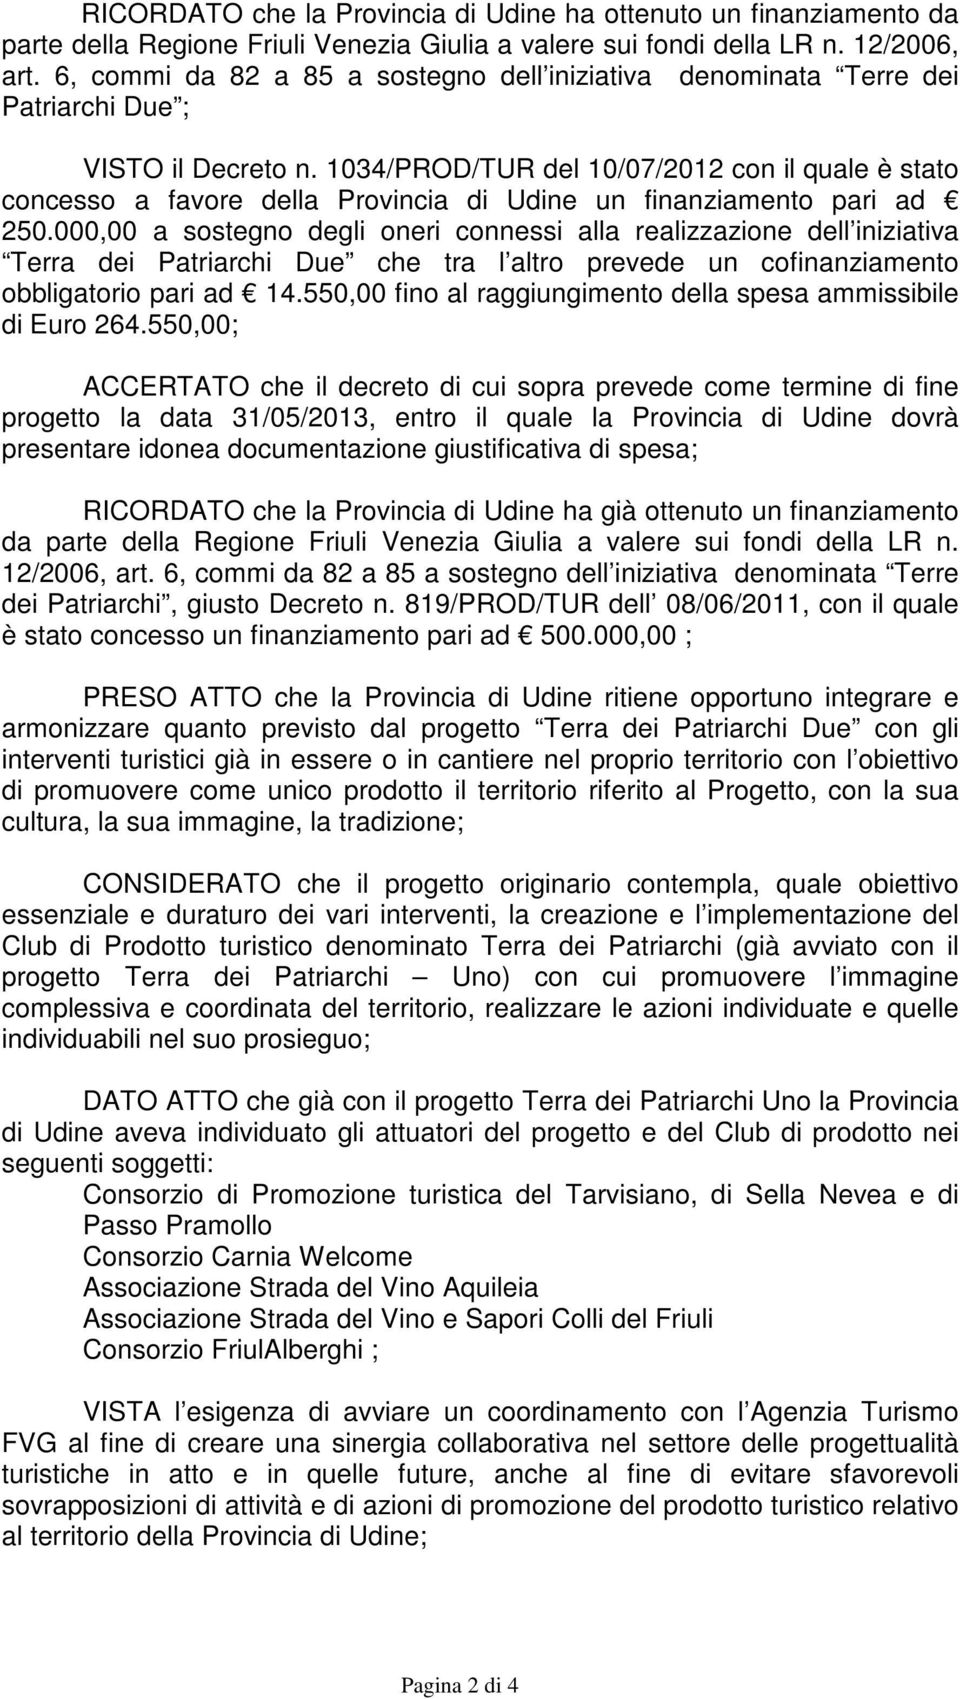 1034/PROD/TUR del 10/07/2012 con il quale è stato concesso a favore della Provincia di Udine un finanziamento pari ad 250.